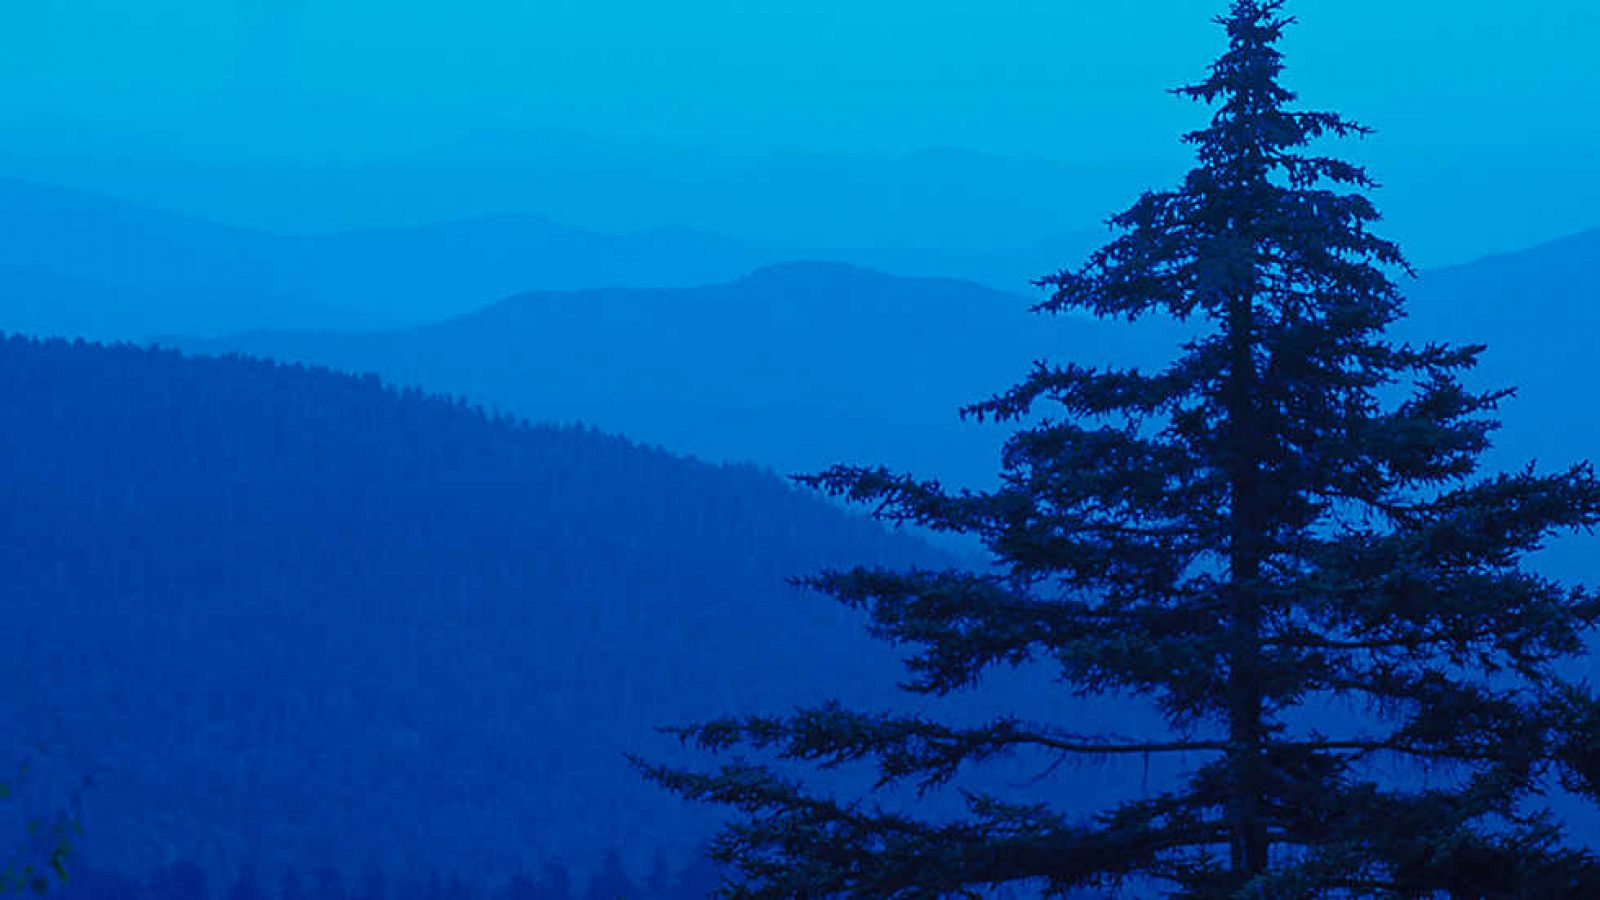 Grandes documentales - Parques nacionales norteamericanos: Las montañas Great Smoky